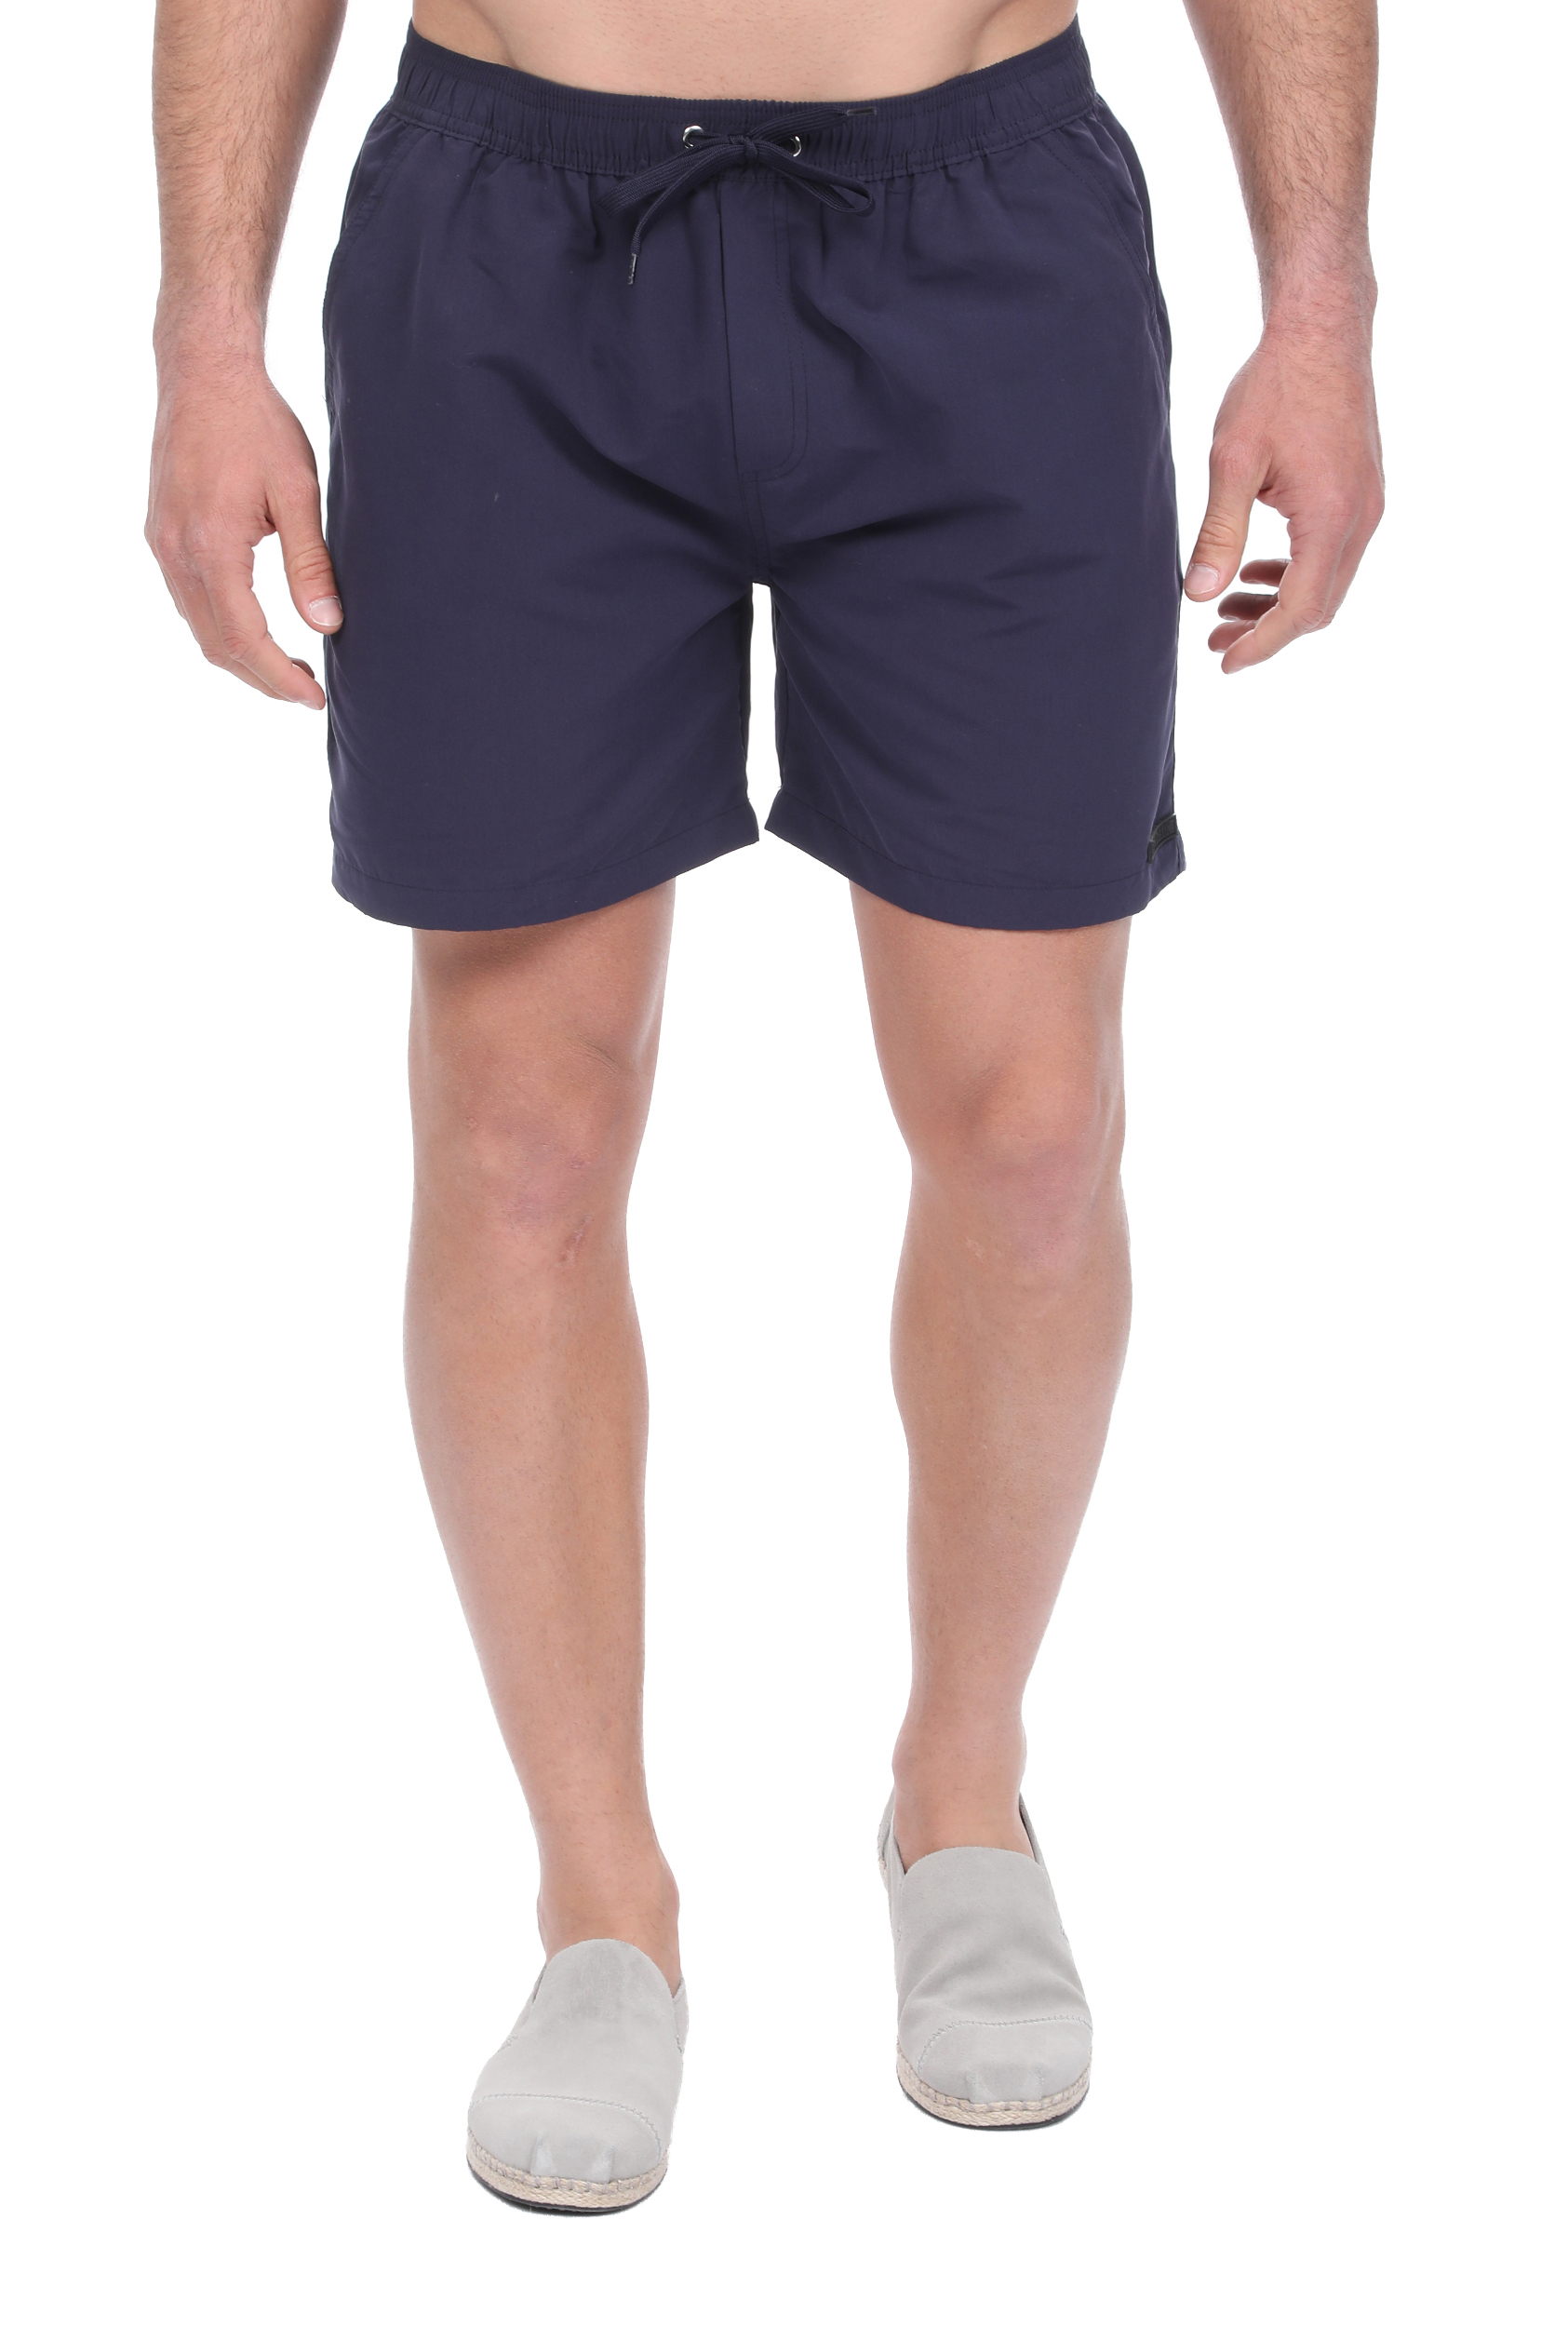 Ανδρικά/Ρούχα/Μαγιό/Σορτς LES DEUX - Ανδρικό μαγιό σορτς LES DEUX Quinn Swim Shorts μπλε